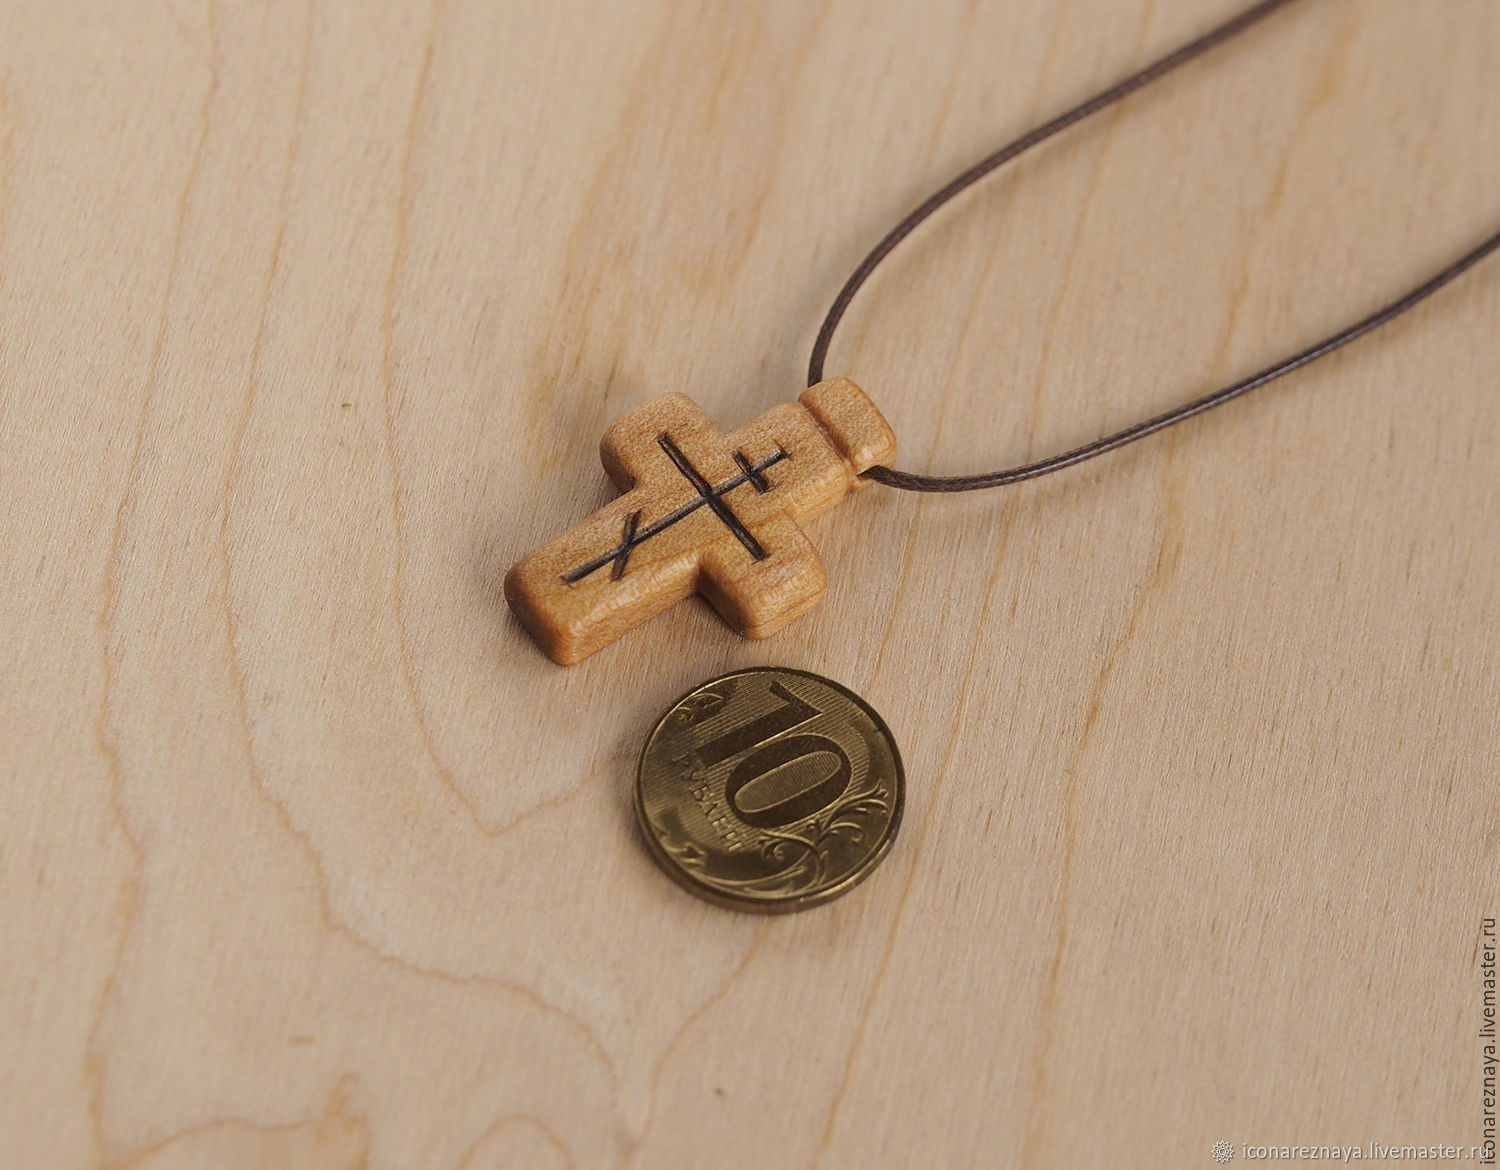 Купить нательный деревянный. Деревянный крестик нательный. Нательный крест из дерева. Небольшие деревянные крестики. Крестик деревянный нательный православный.